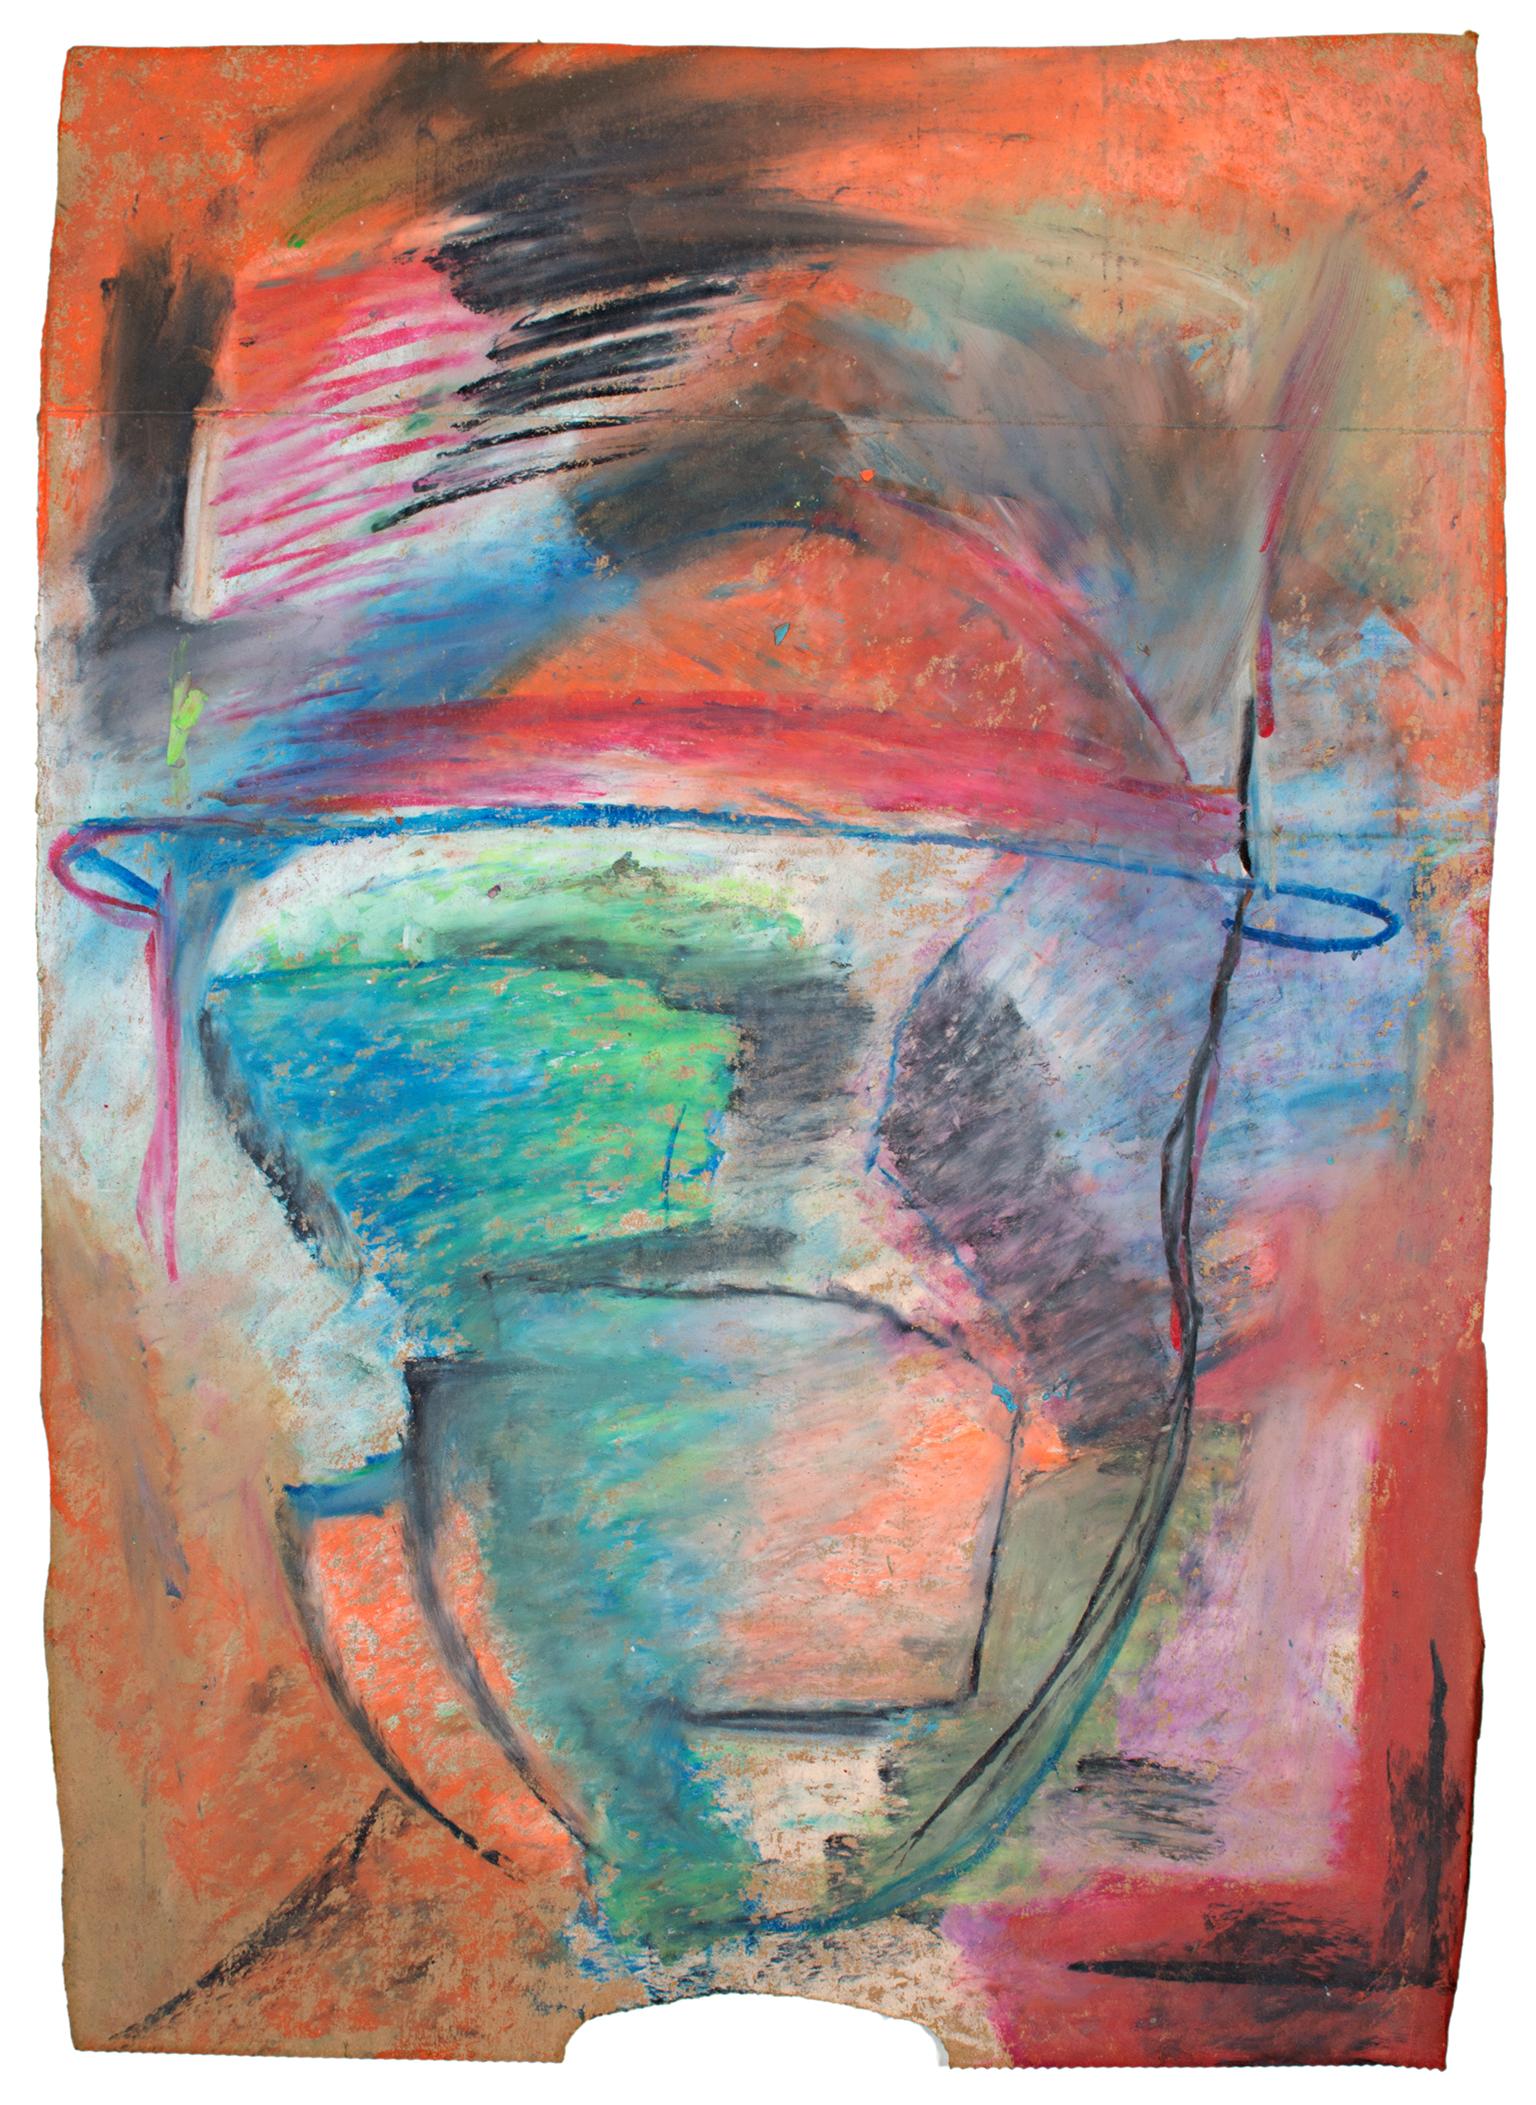 "Liek" est un dessin original au pastel gras sur un sac en papier de Reginald K. Gee. L'artiste a signé l'œuvre au dos. Elle présente des champs de couleurs abstraites et des marques gestuelles, sur lesquelles est dessinée la suggestion d'un visage